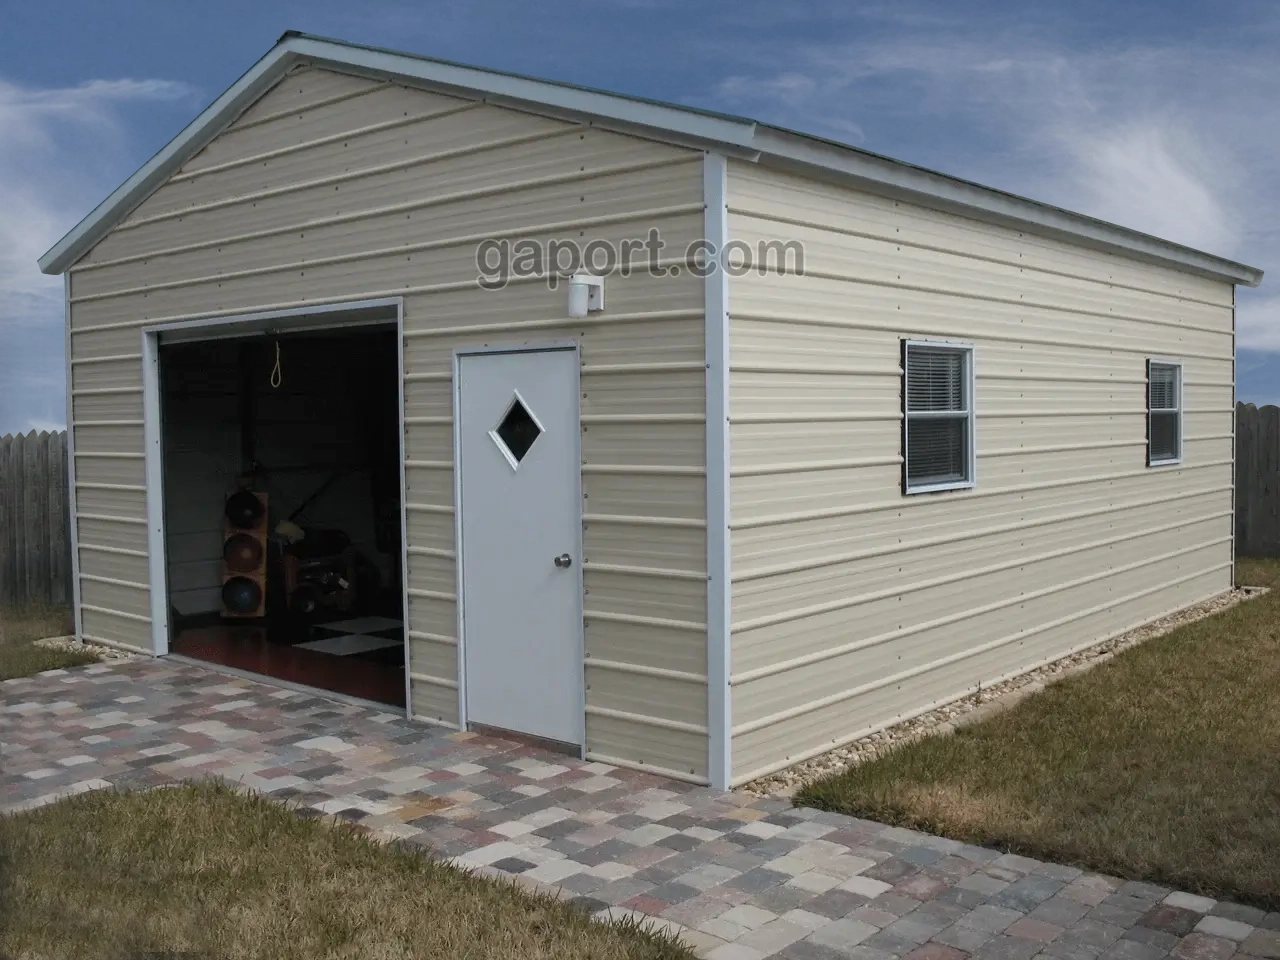 20x25x9 metal garage with roll up door and walk-in door plus windows.